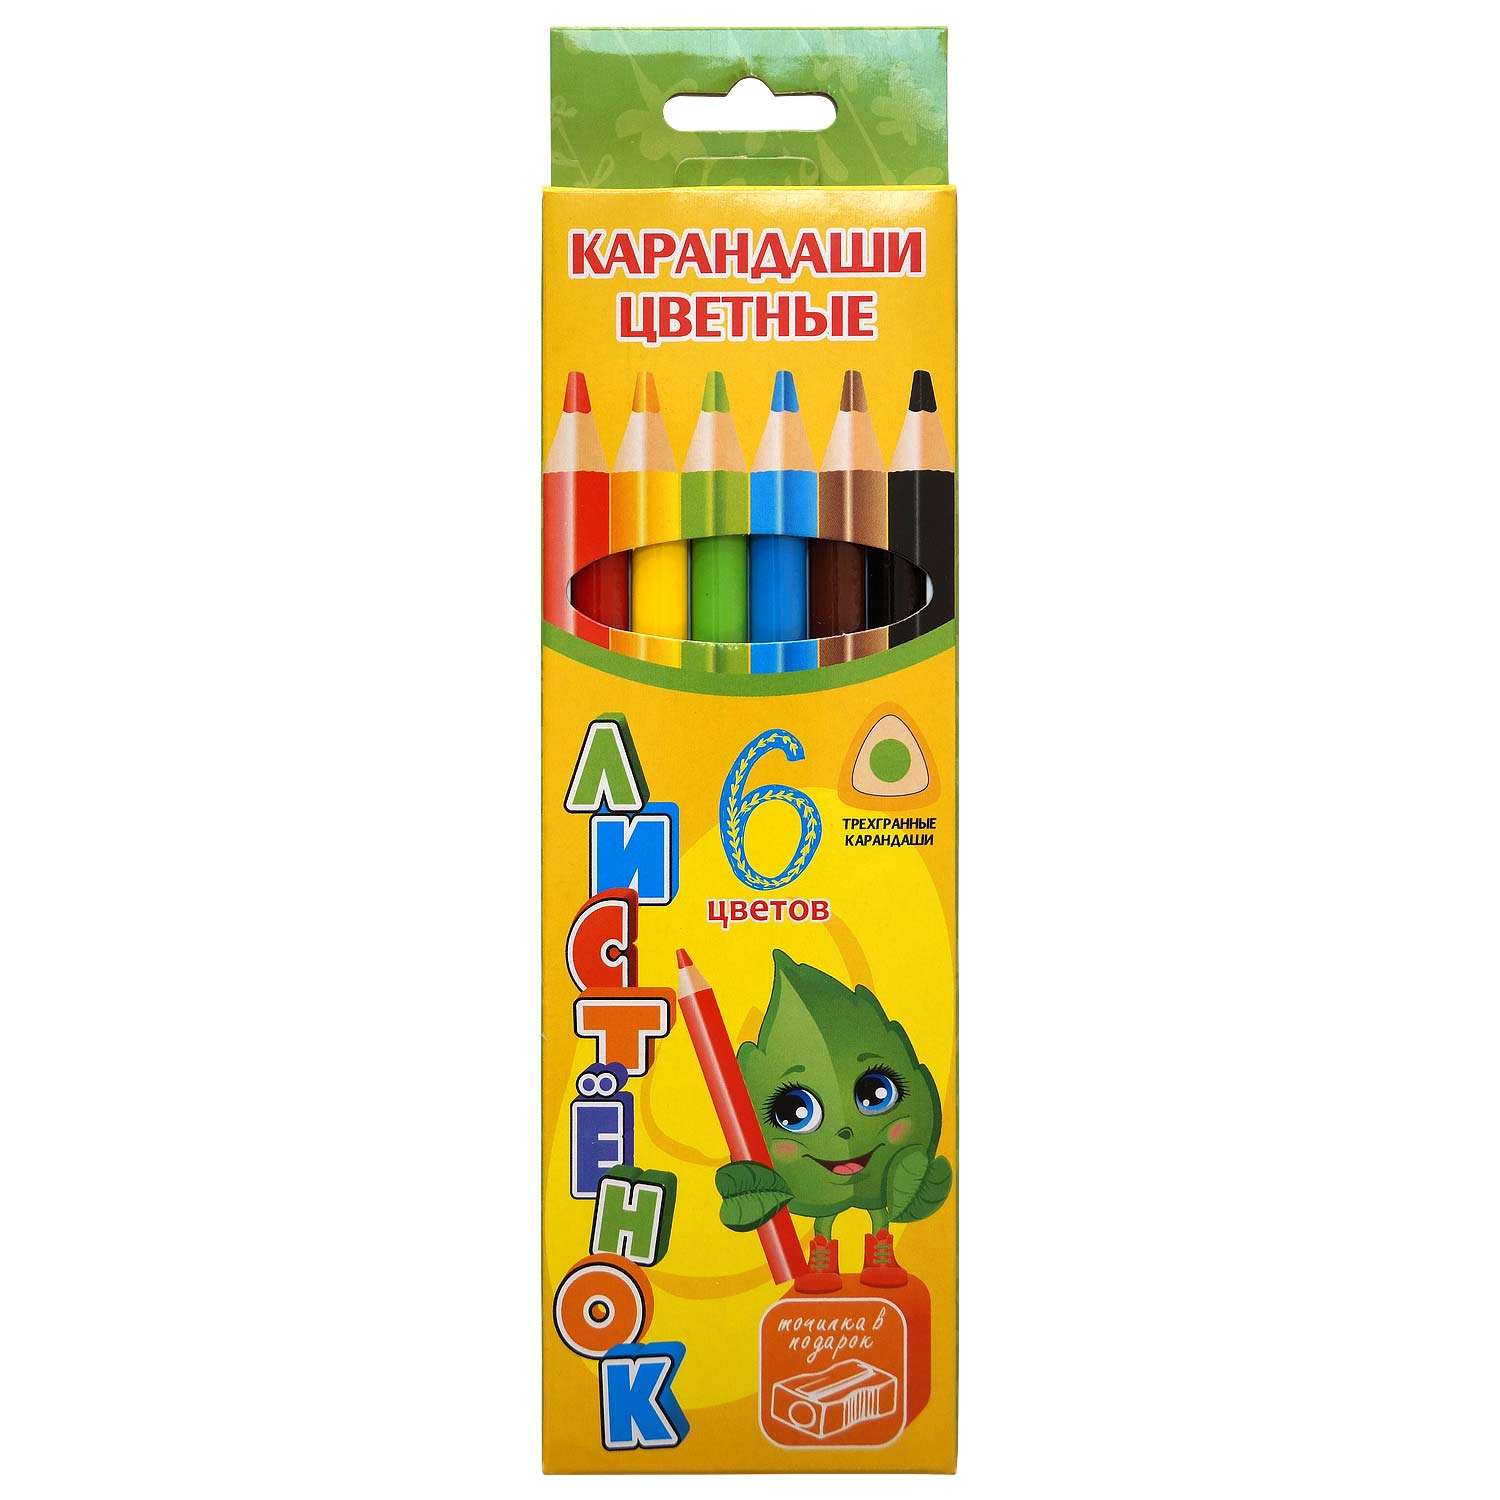 Карандаши цветные Josef otten Для рисования - фото 1